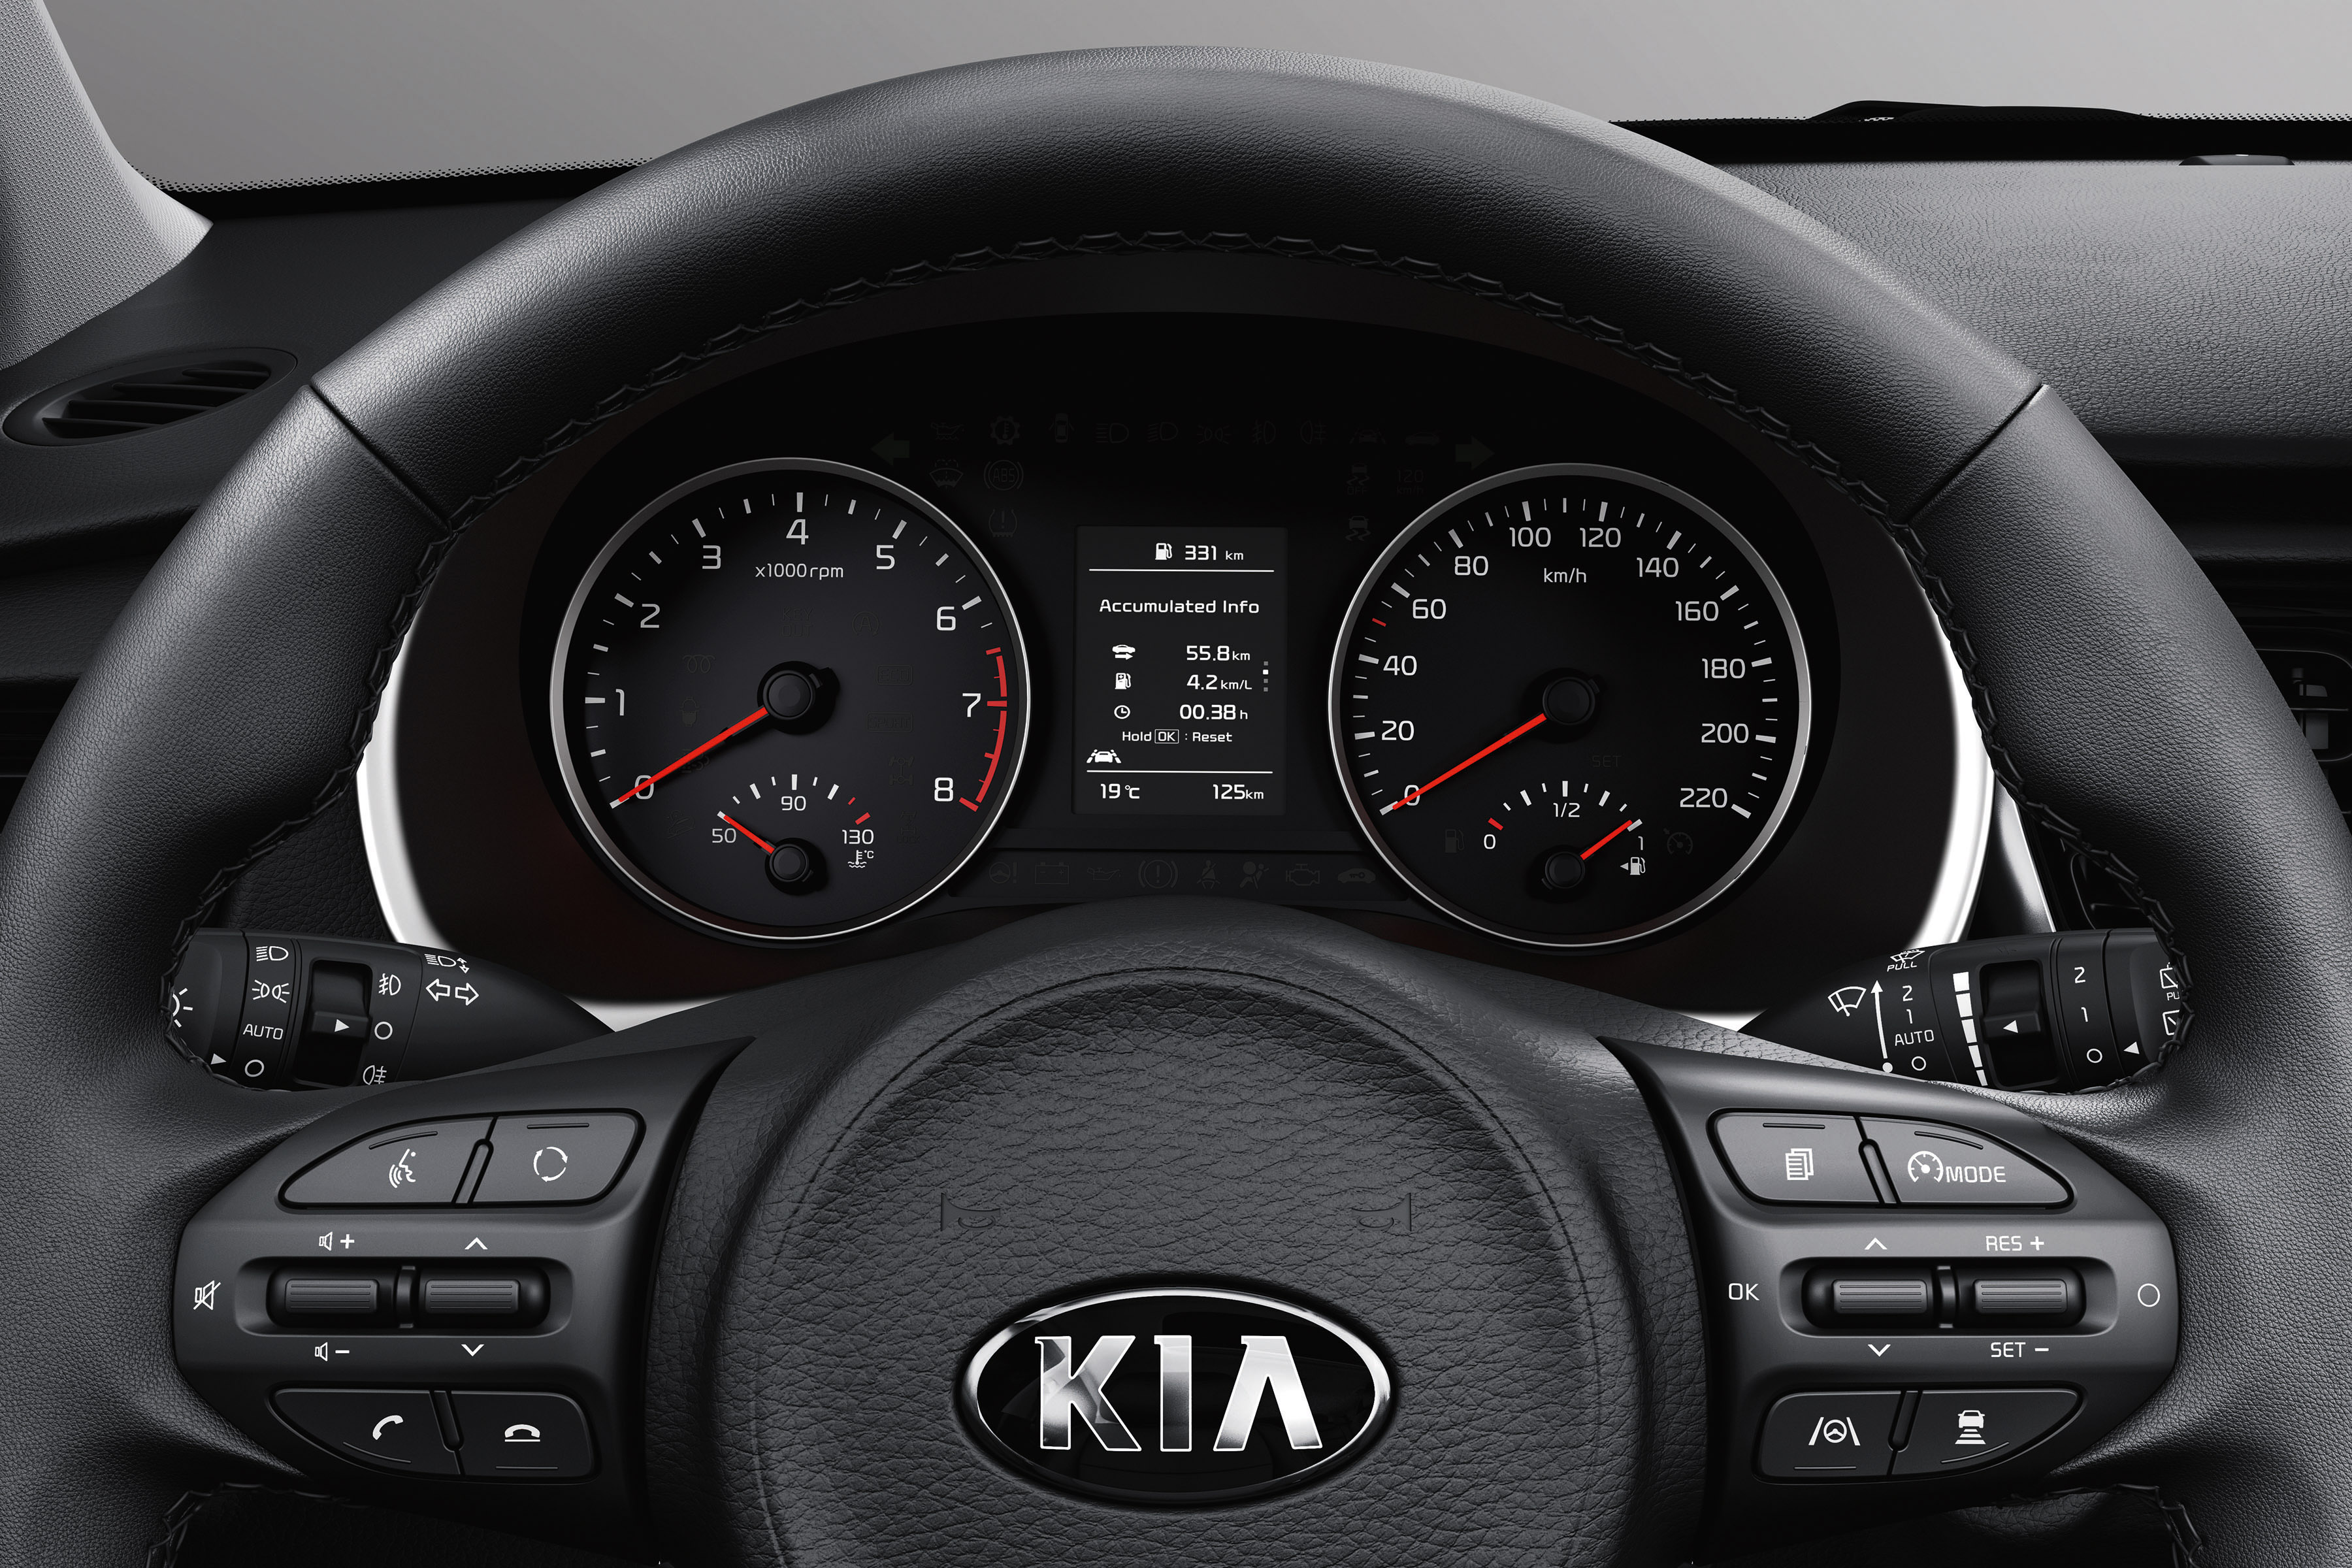 https://s3.paultan.org/image/2020/05/2020-Kia-Rio-facelift-official-reveal-11.jpg